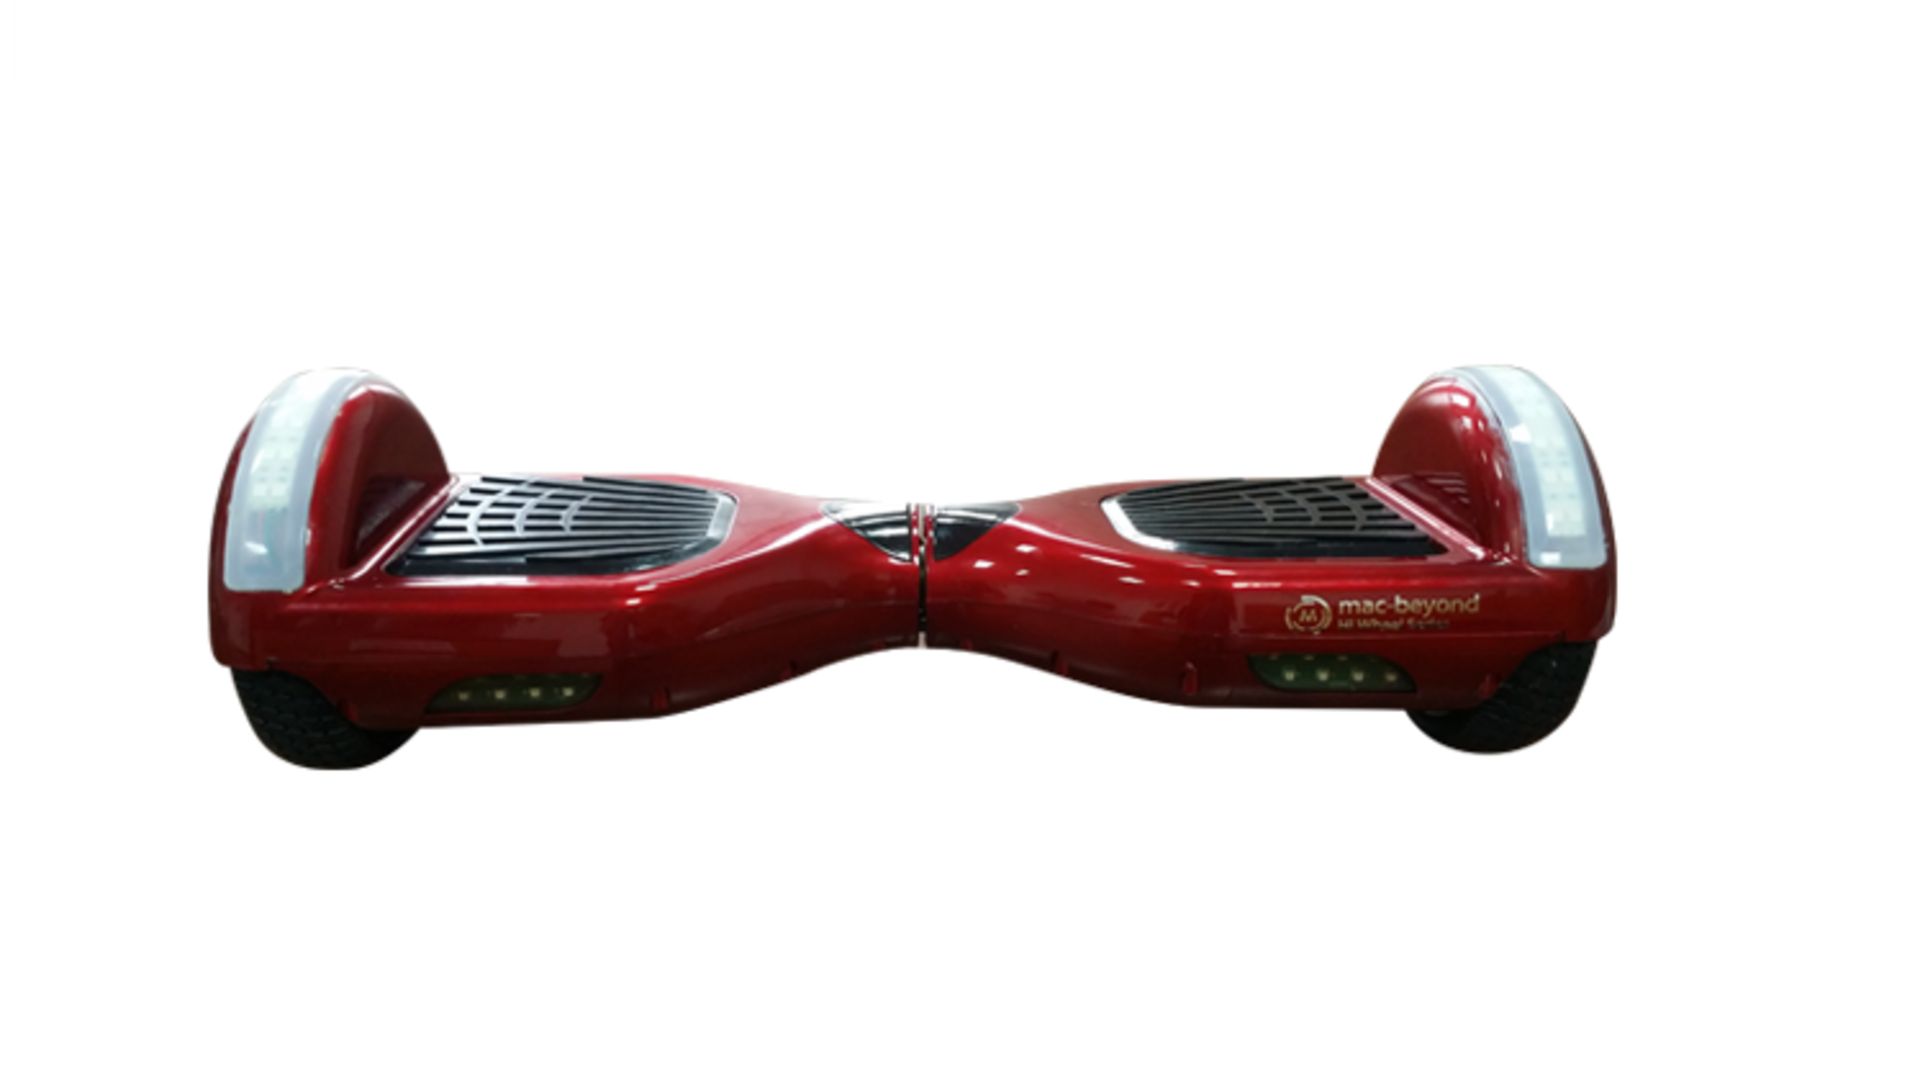 macbeyond x Hi wheel Series, Red Modelæ R2 LED (6.5 inch wheels, Best Seller) Smart personal - Image 7 of 11